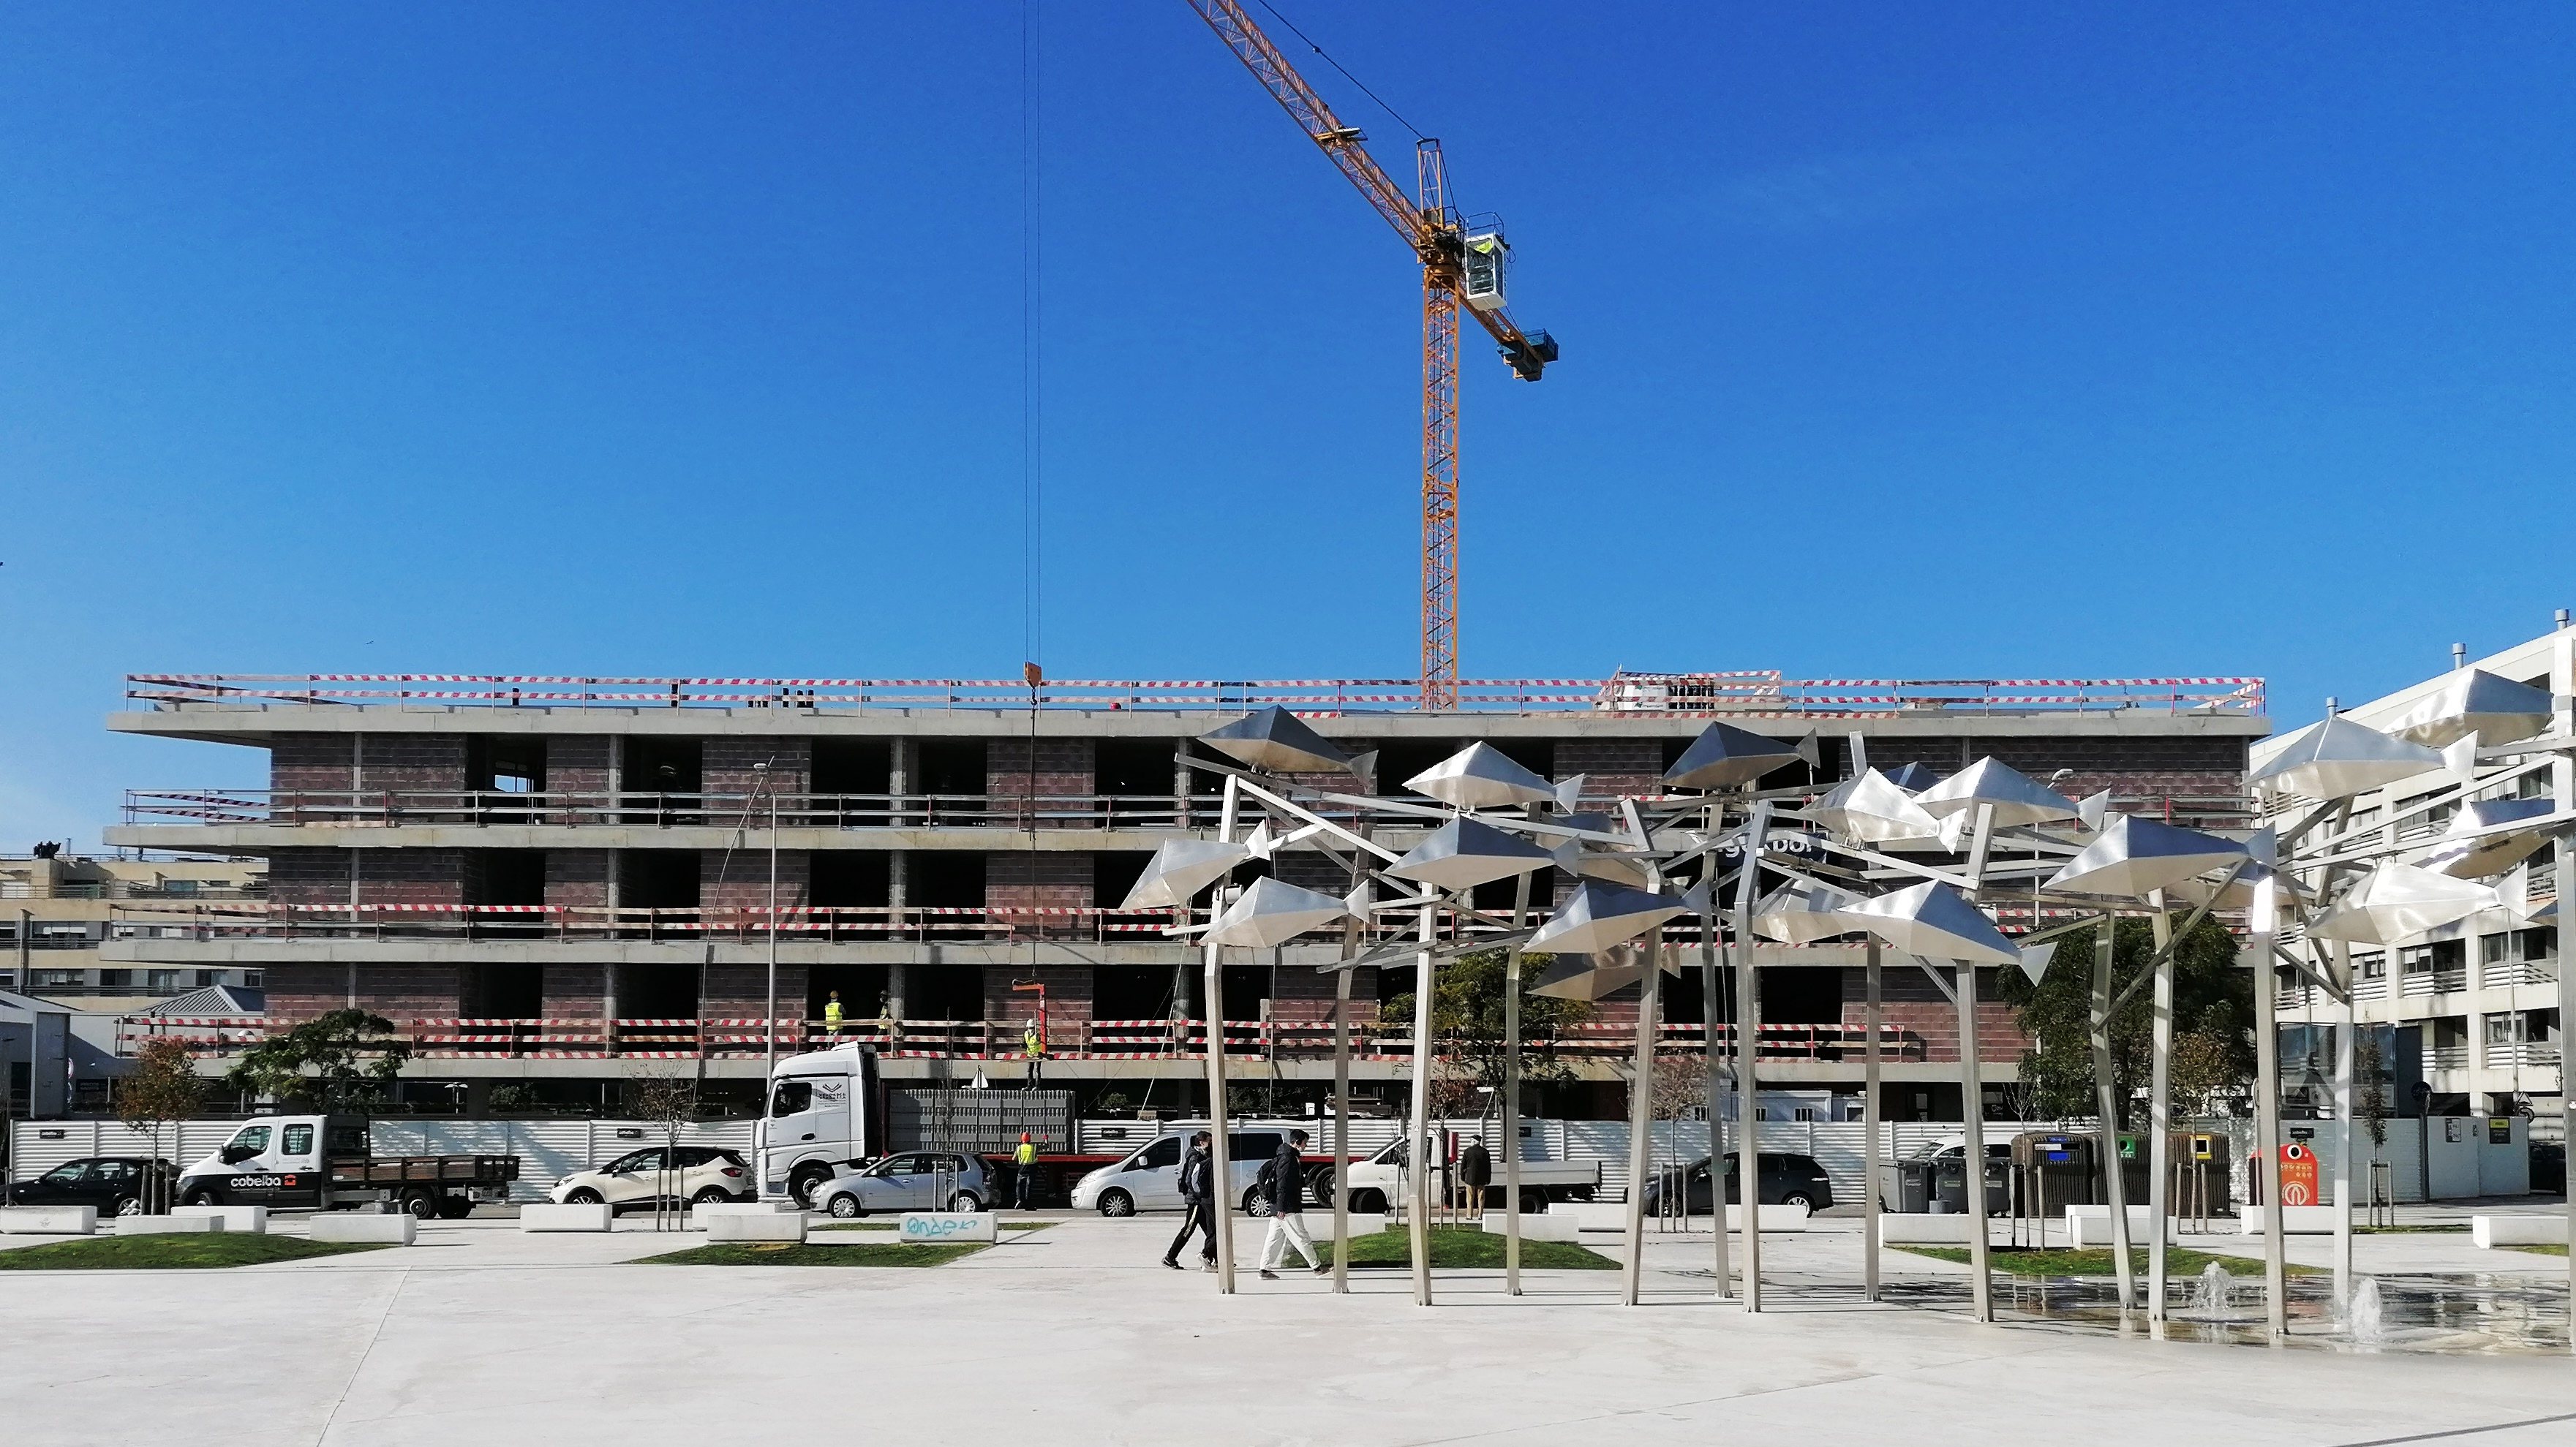 O aparthotel está a ser construído a um passo do mar, em Matosinhos